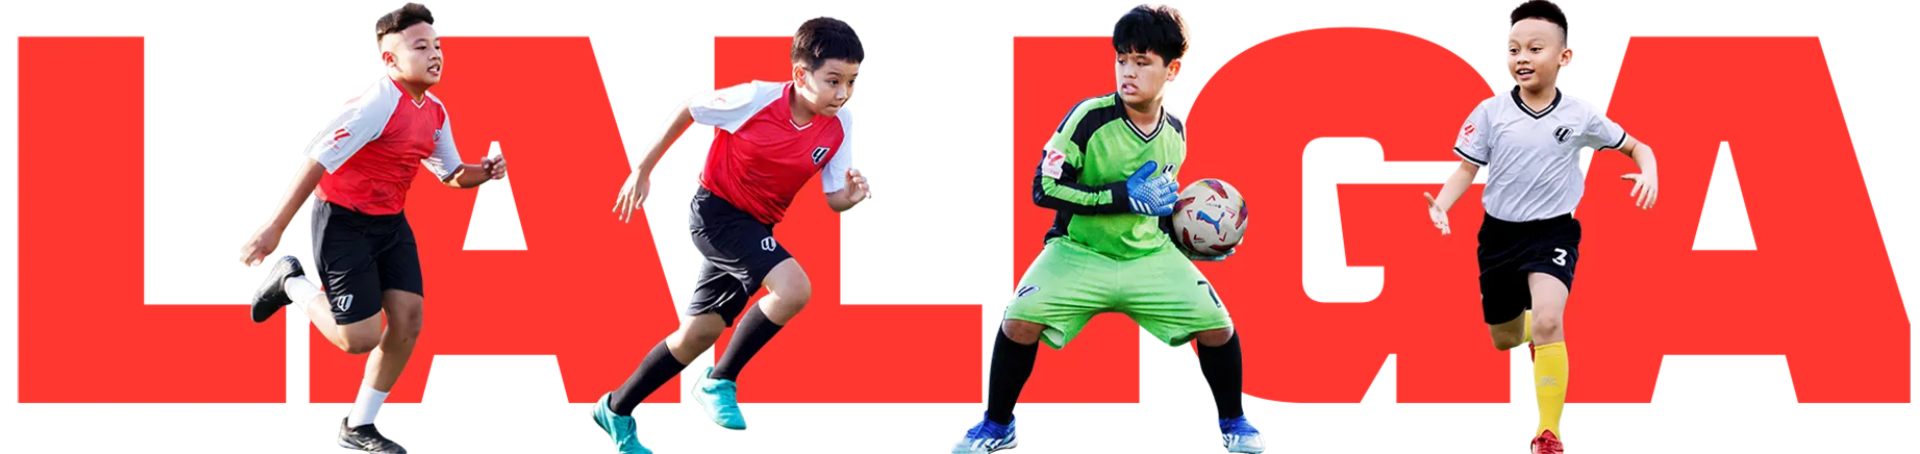 20240320 Academy Banner with Models 1 1 1 | Laliga Việt Nam - Ươm mầm tài năng bóng đá trẻ